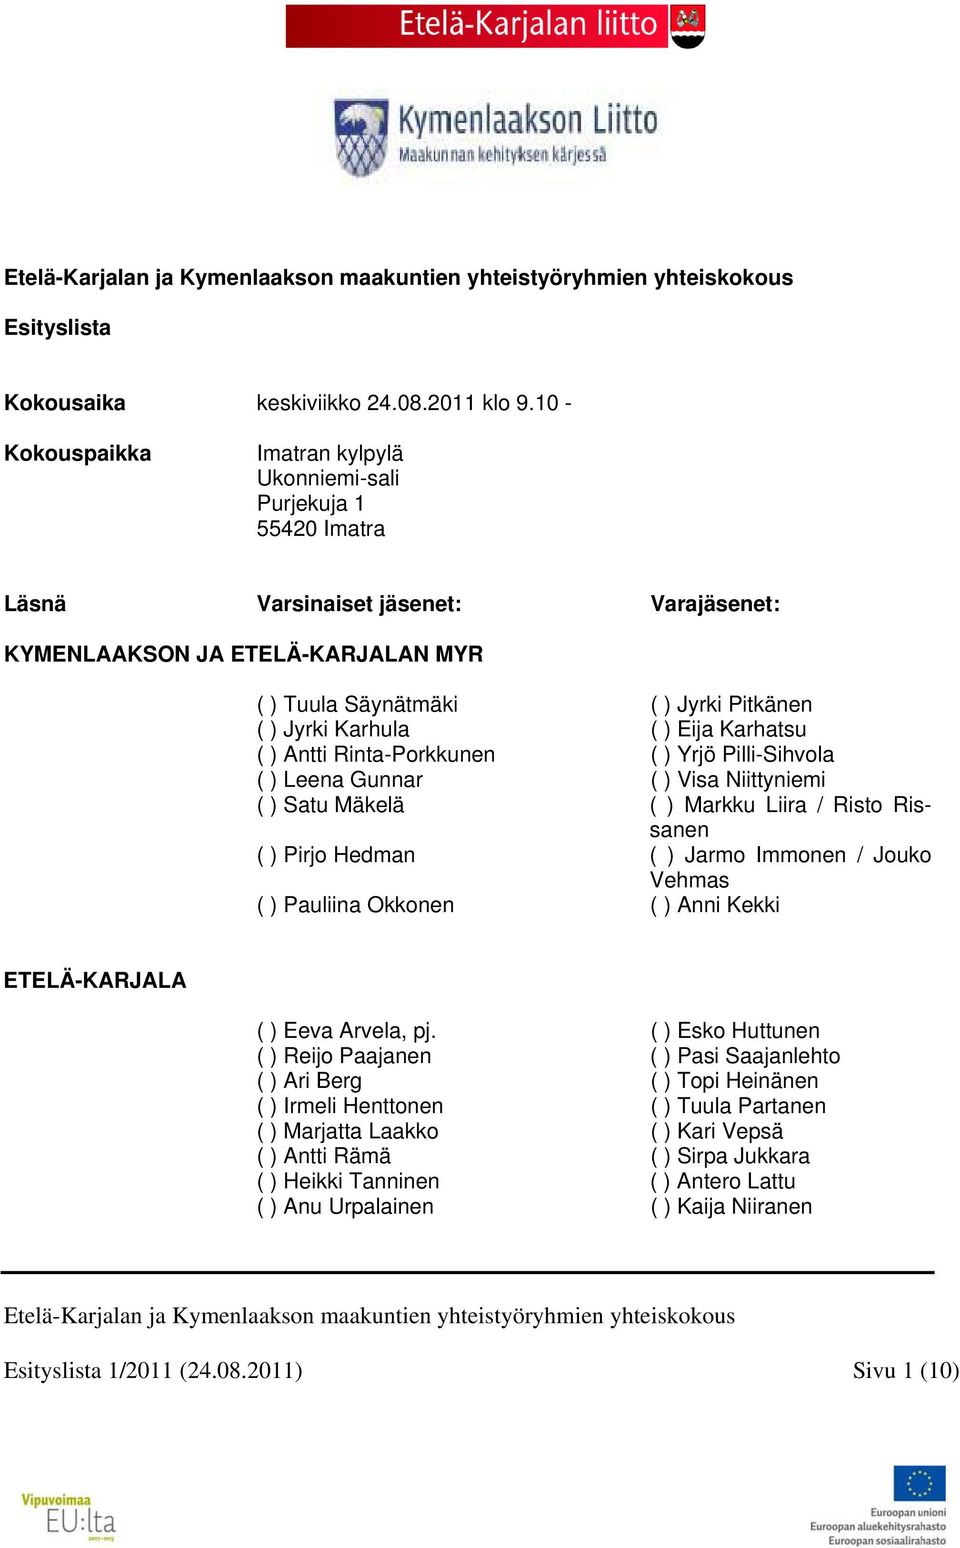 Karhula ( ) Eija Karhatsu ( ) Antti Rinta-Porkkunen ( ) Yrjö Pilli-Sihvola ( ) Leena Gunnar ( ) Visa Niittyniemi ( ) Satu Mäkelä ( ) Markku Liira / Risto Rissanen ( ) Pirjo Hedman ( ) Jarmo Immonen /